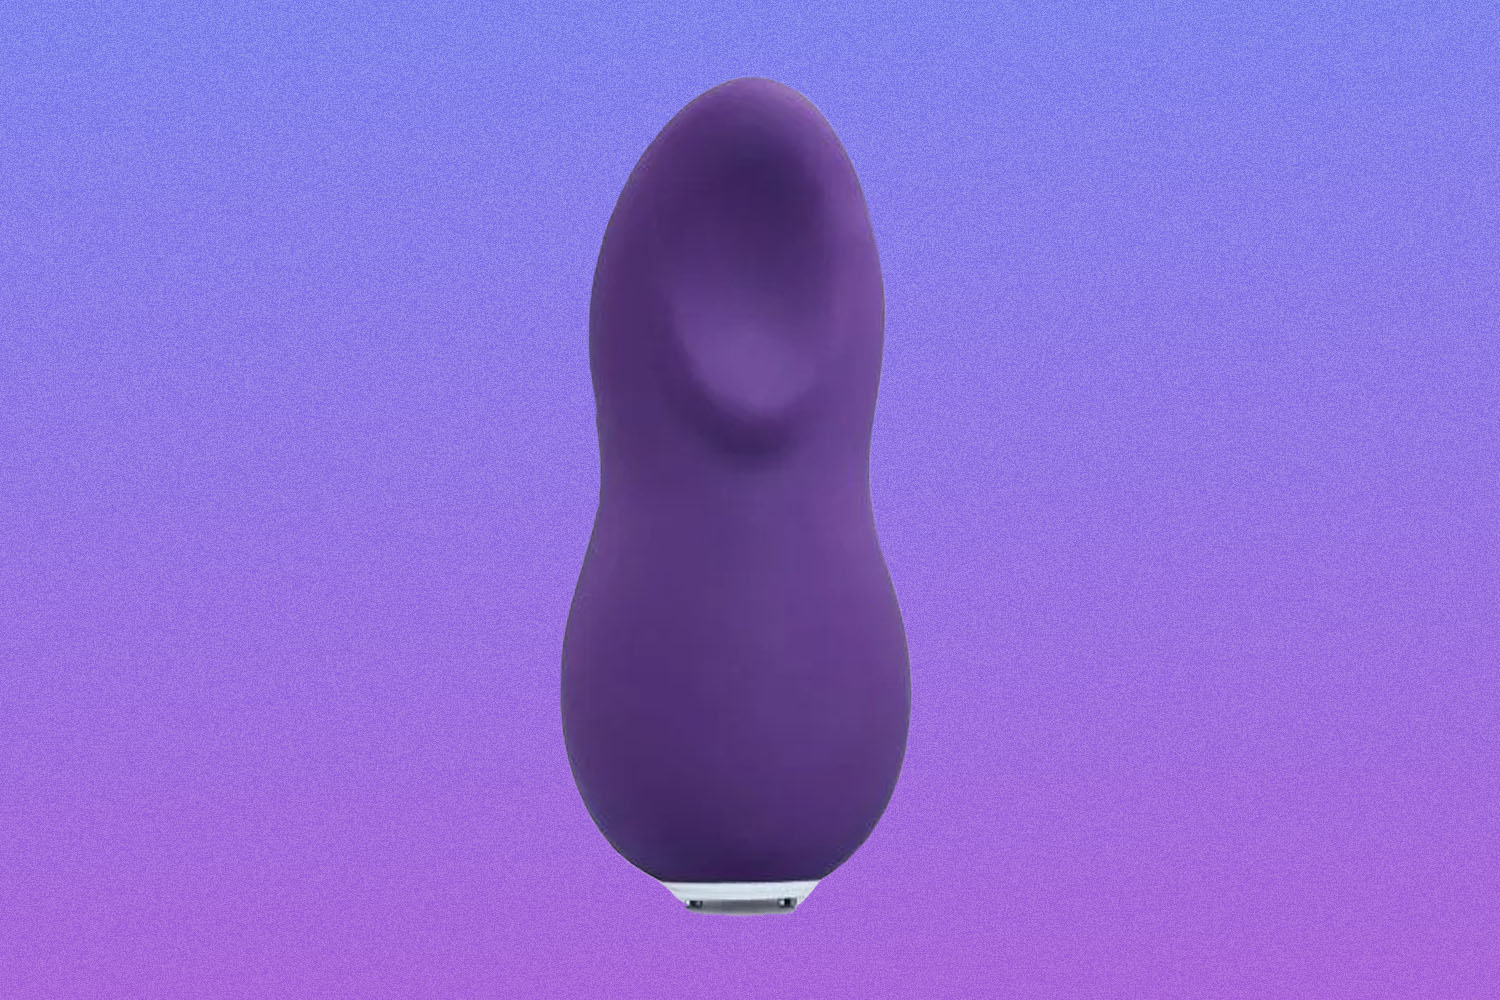 Purple vibrator on purple background